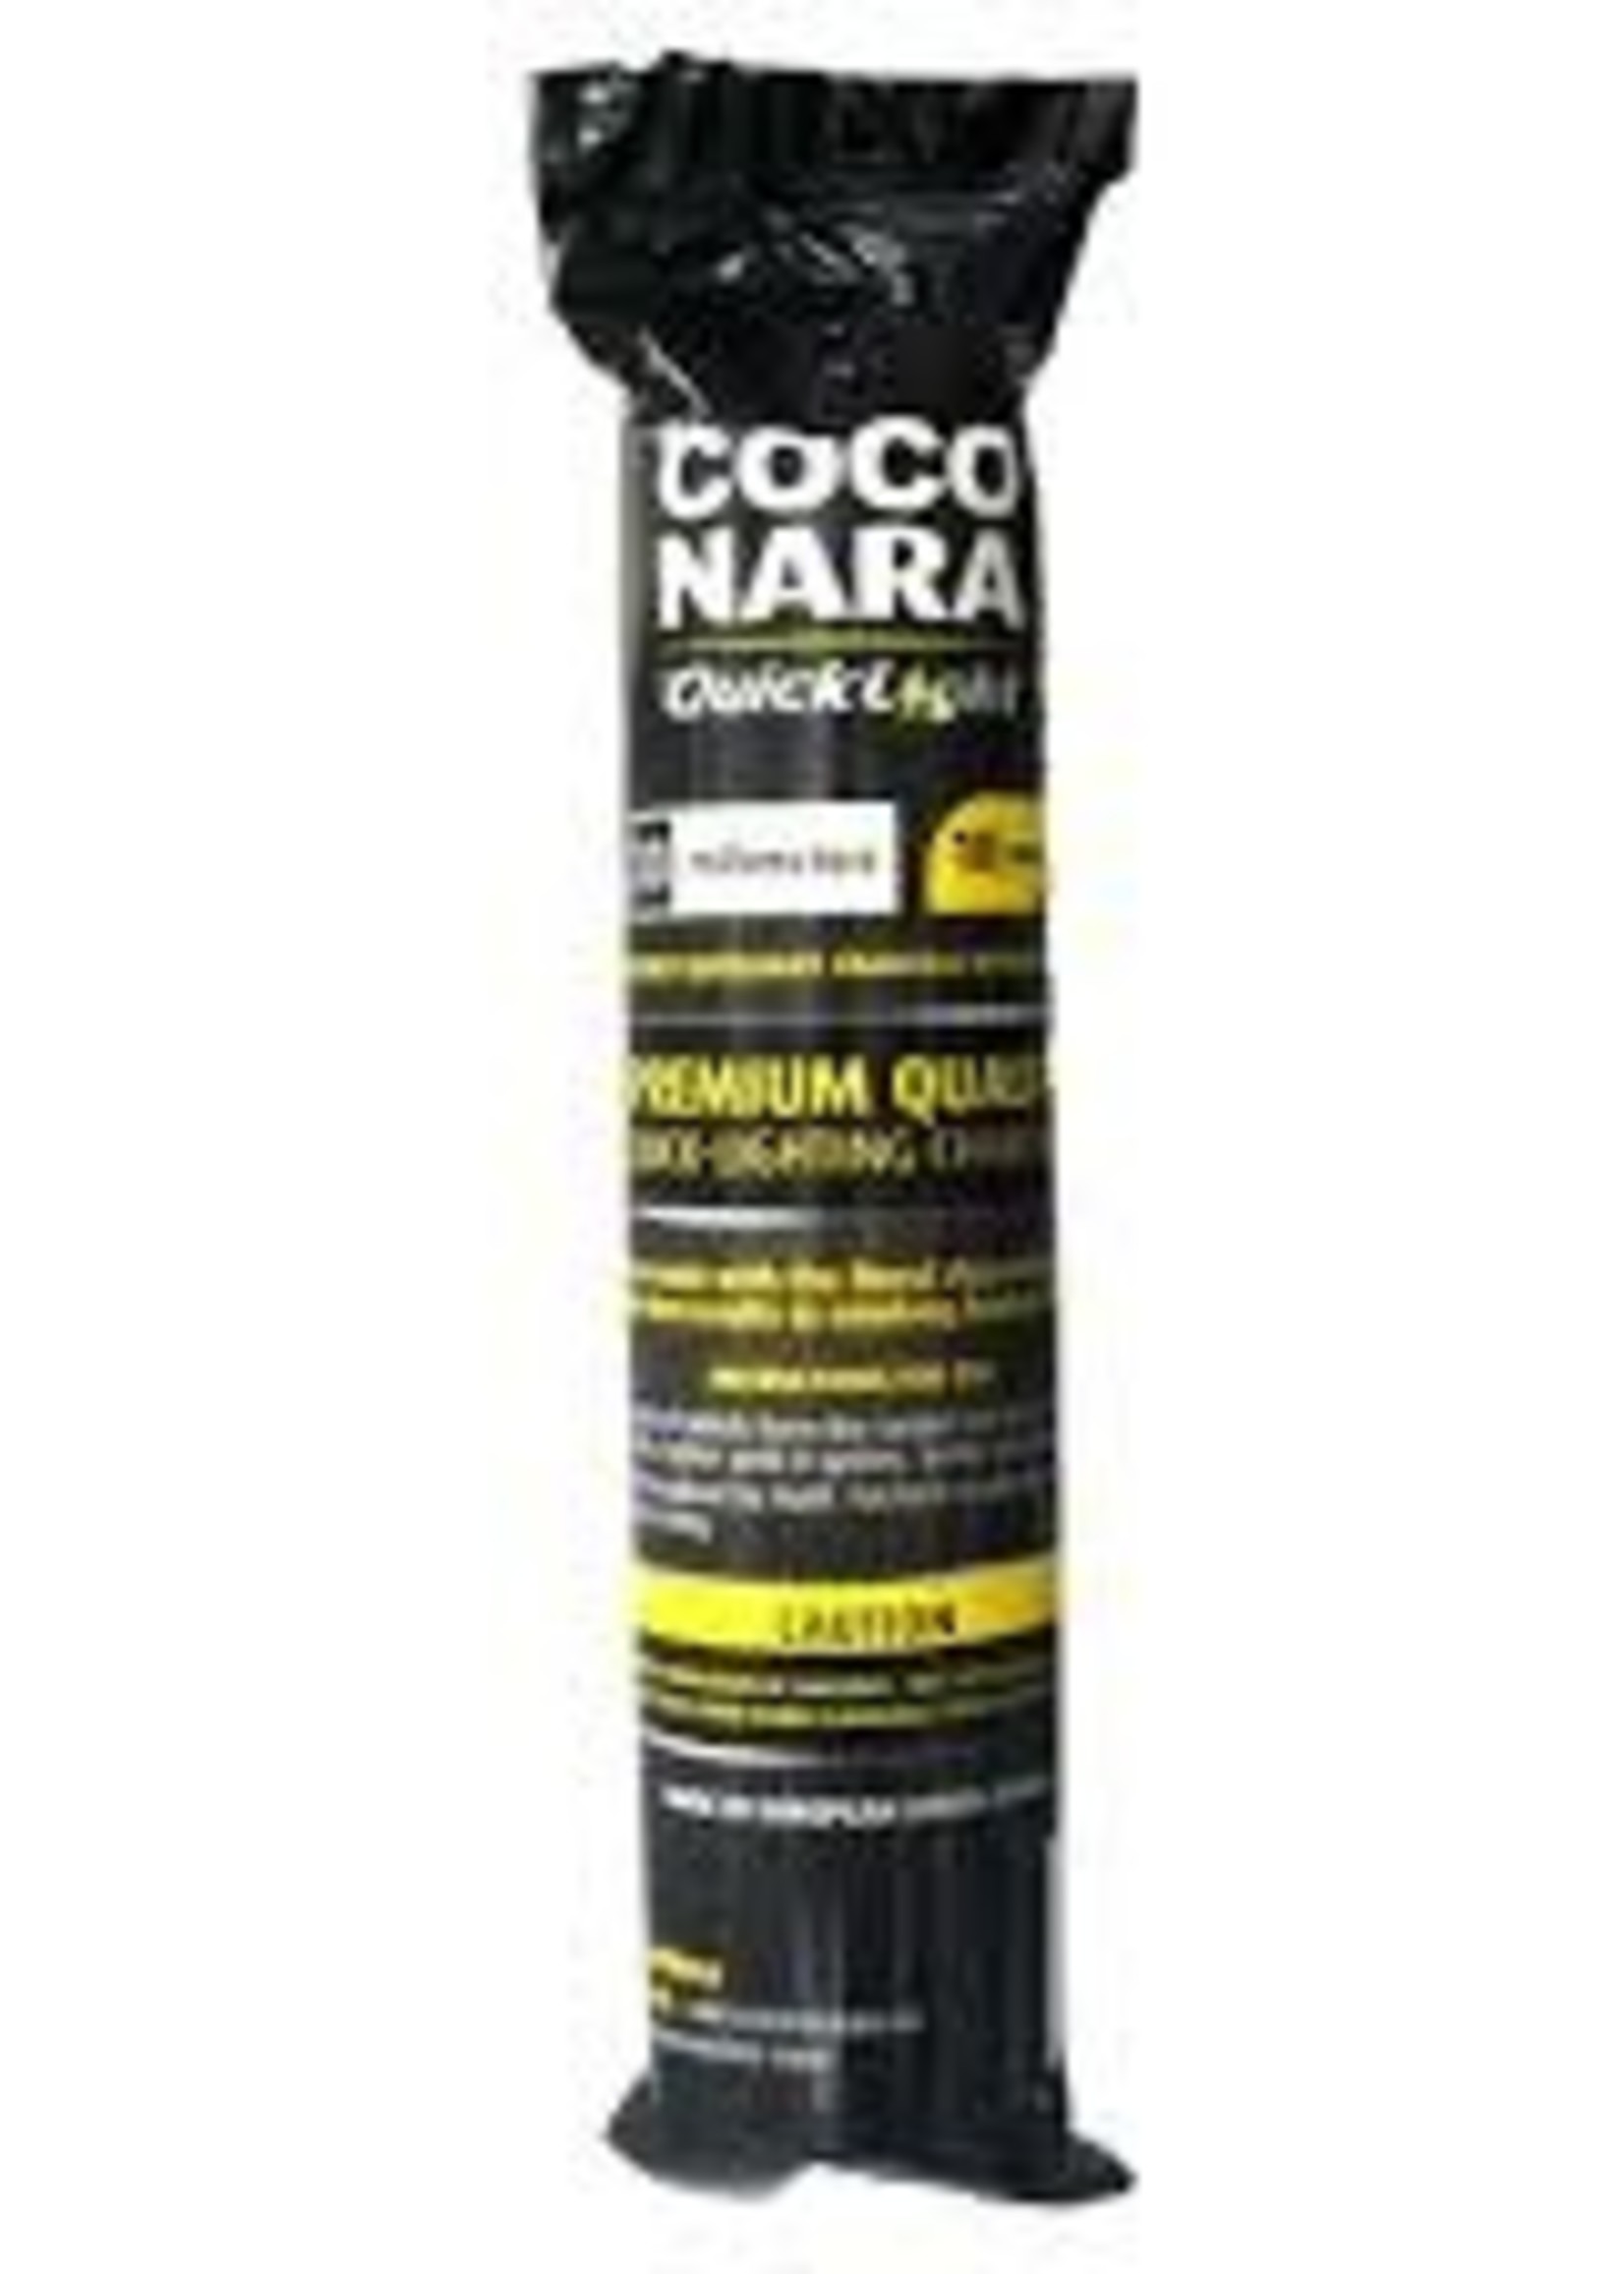 Coco Nara Quick Light Coals 33mm